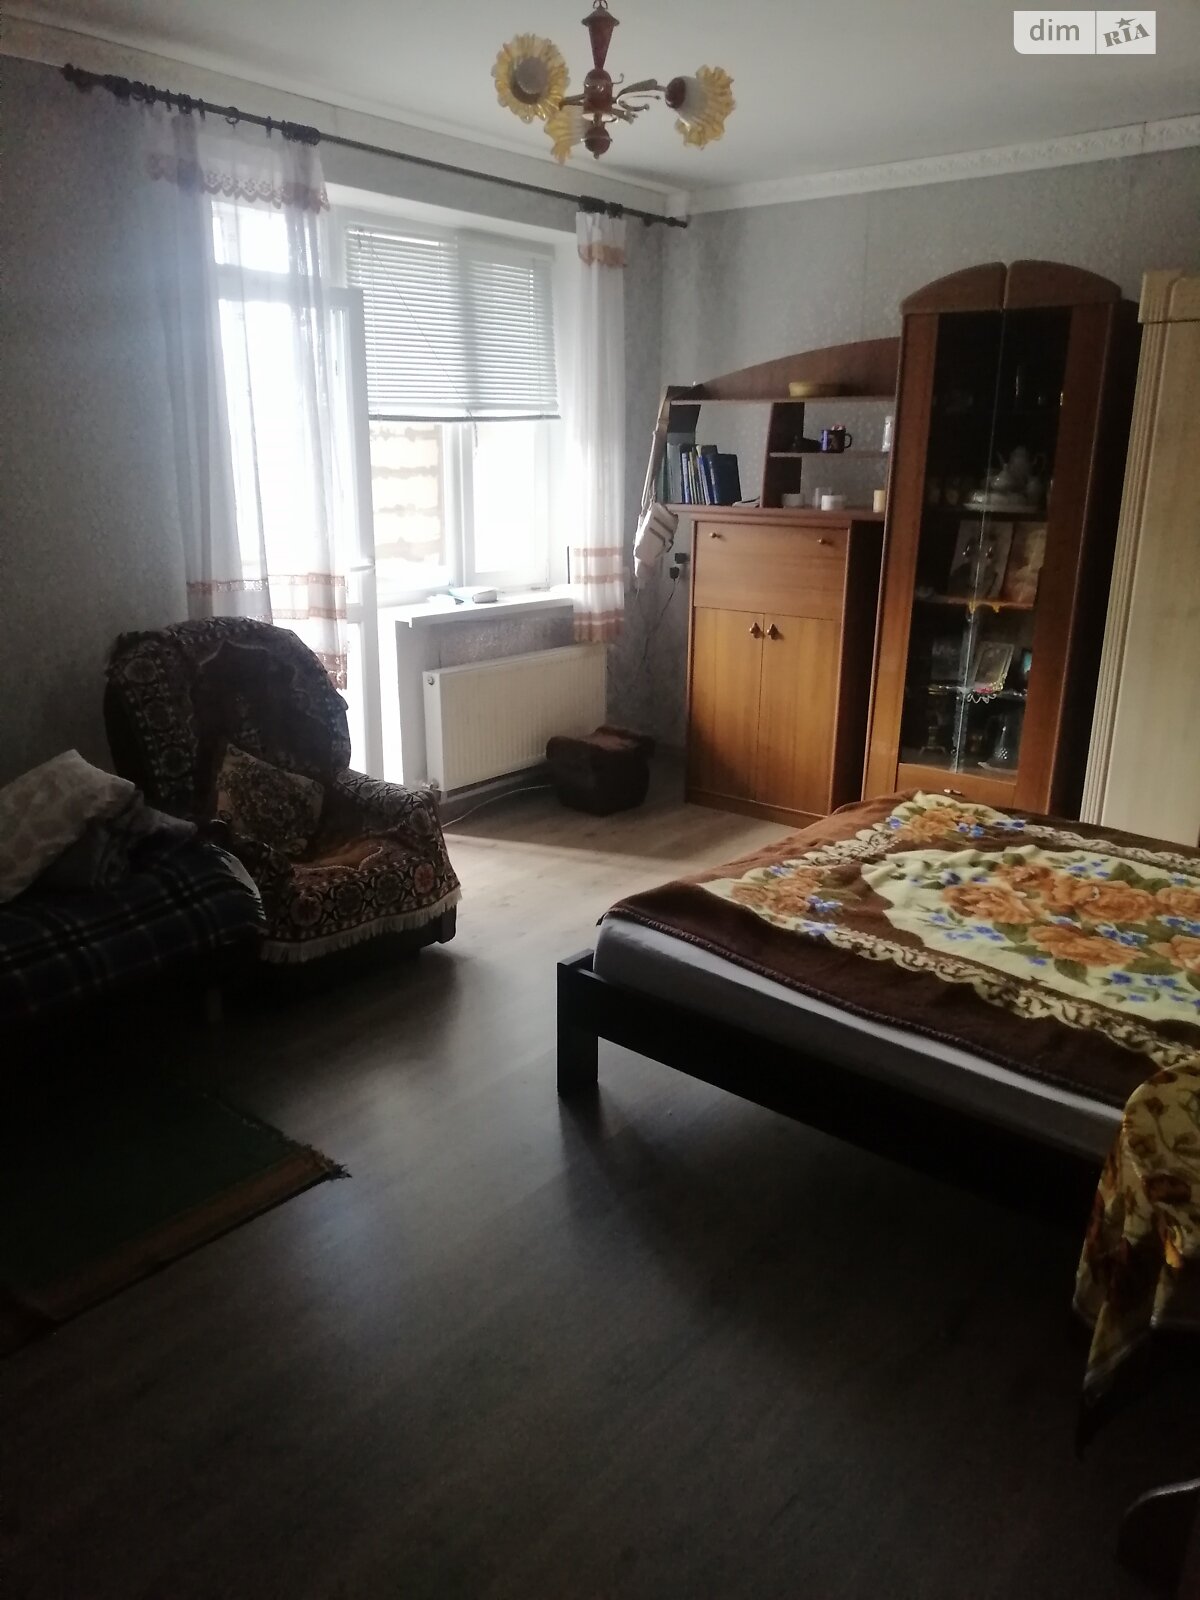 Продажа части дома в Стрижавке, улица Александровская, 3 комнаты фото 1